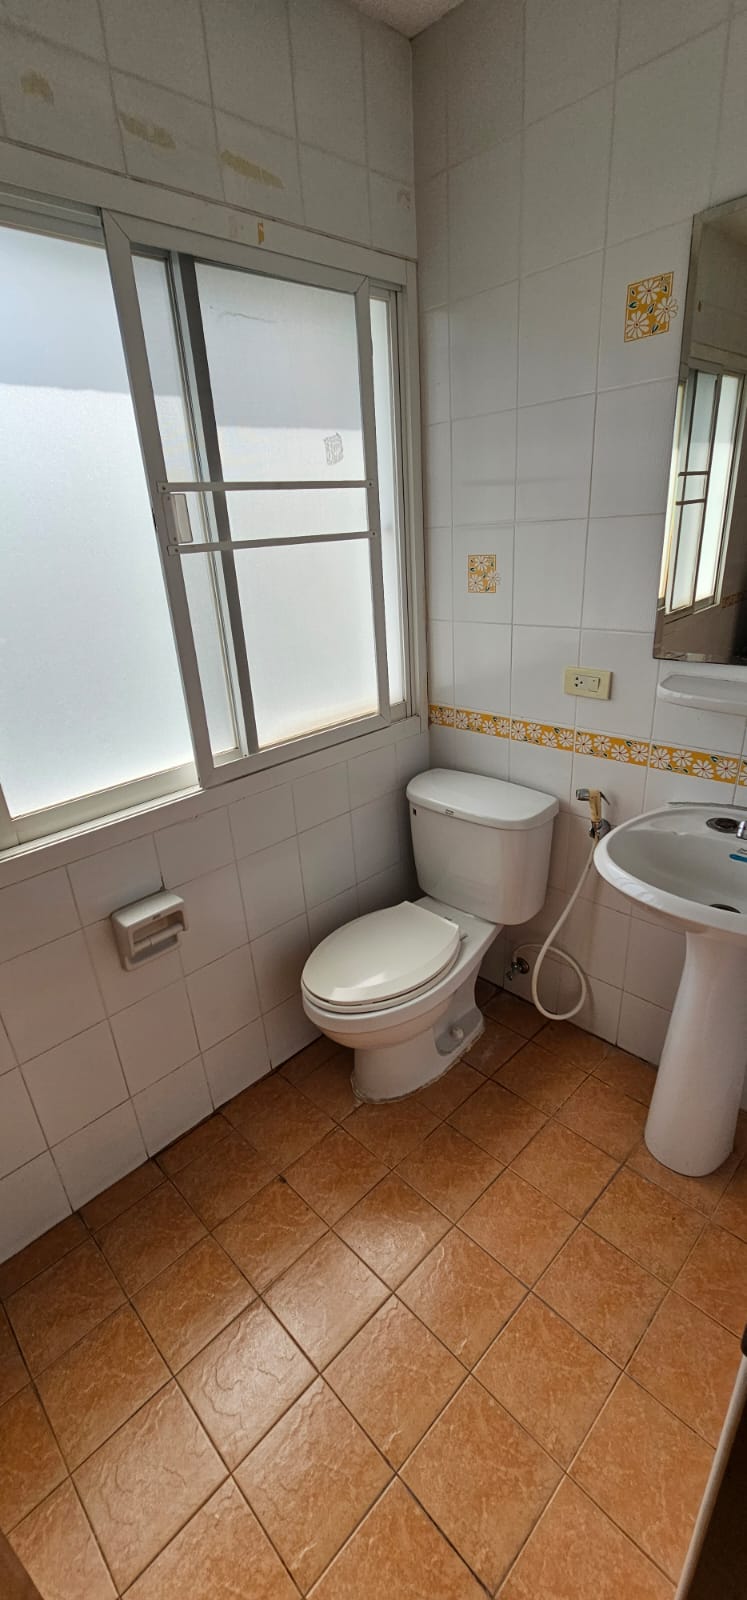 2 Bedrooms, 2 Bathrooms 170sqm size at El patio Sukhumvit 31 For Rent 35K THB